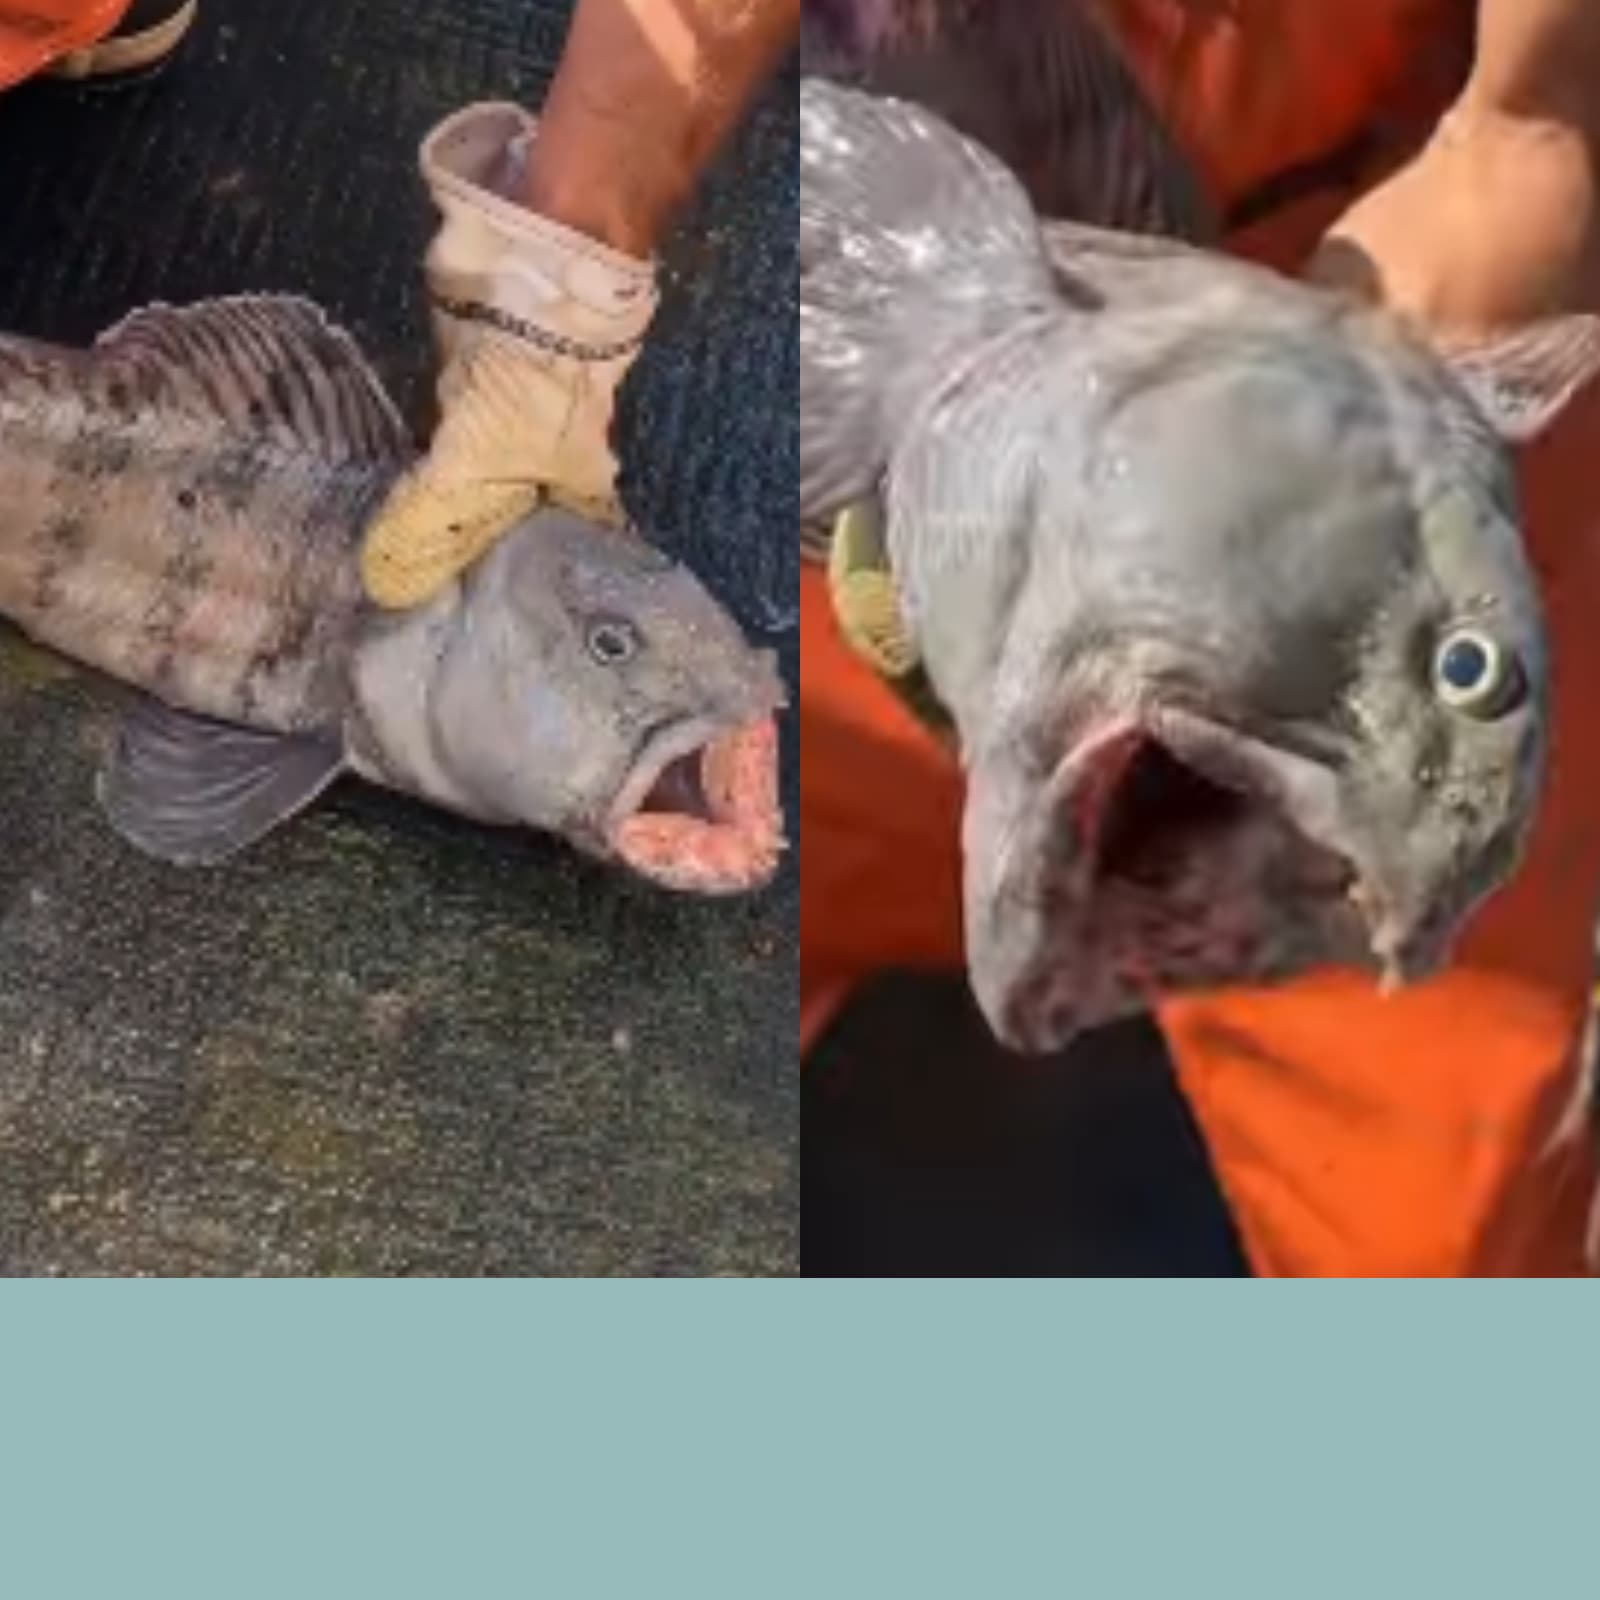 https://images.news18.com/ibnlive/uploads/2022/07/monster-fish.png